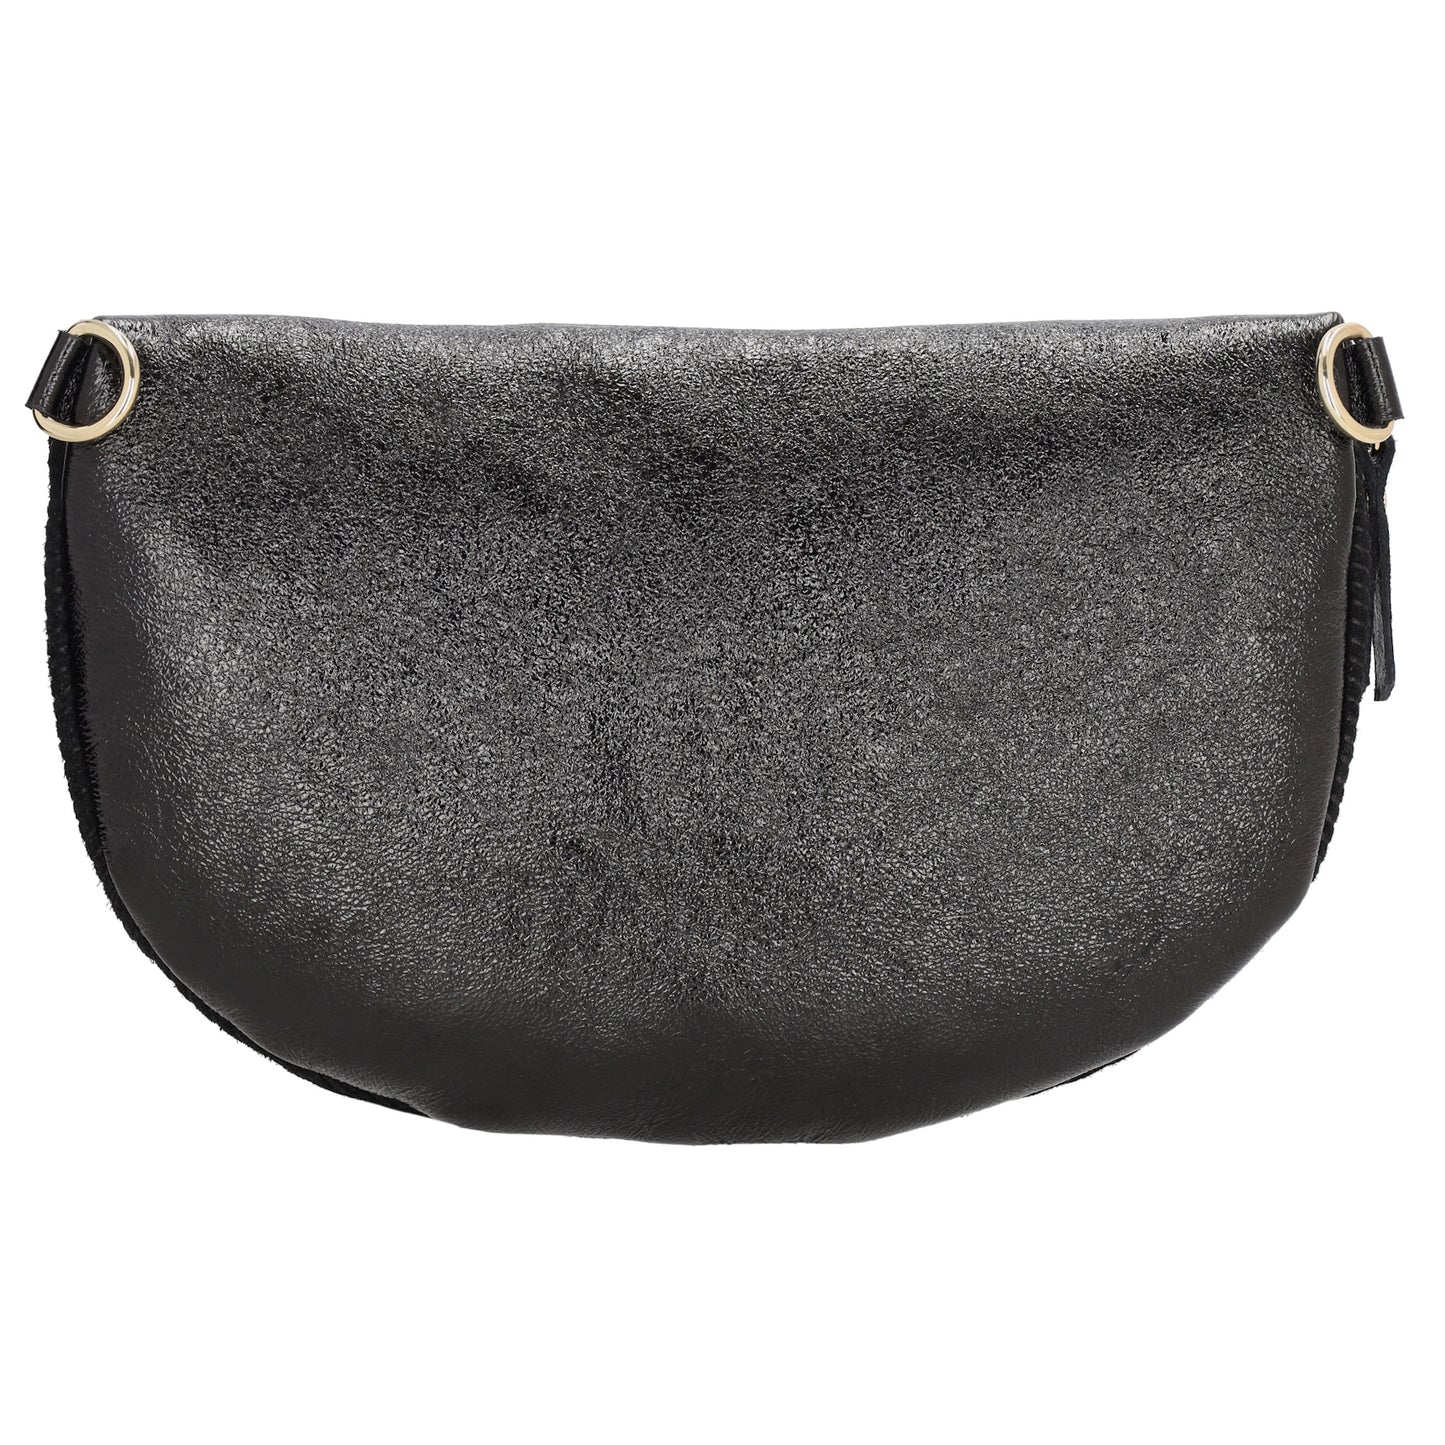 Bodybag|Gürteltasche 30x20cm in Schwarz aus Leder und Kord